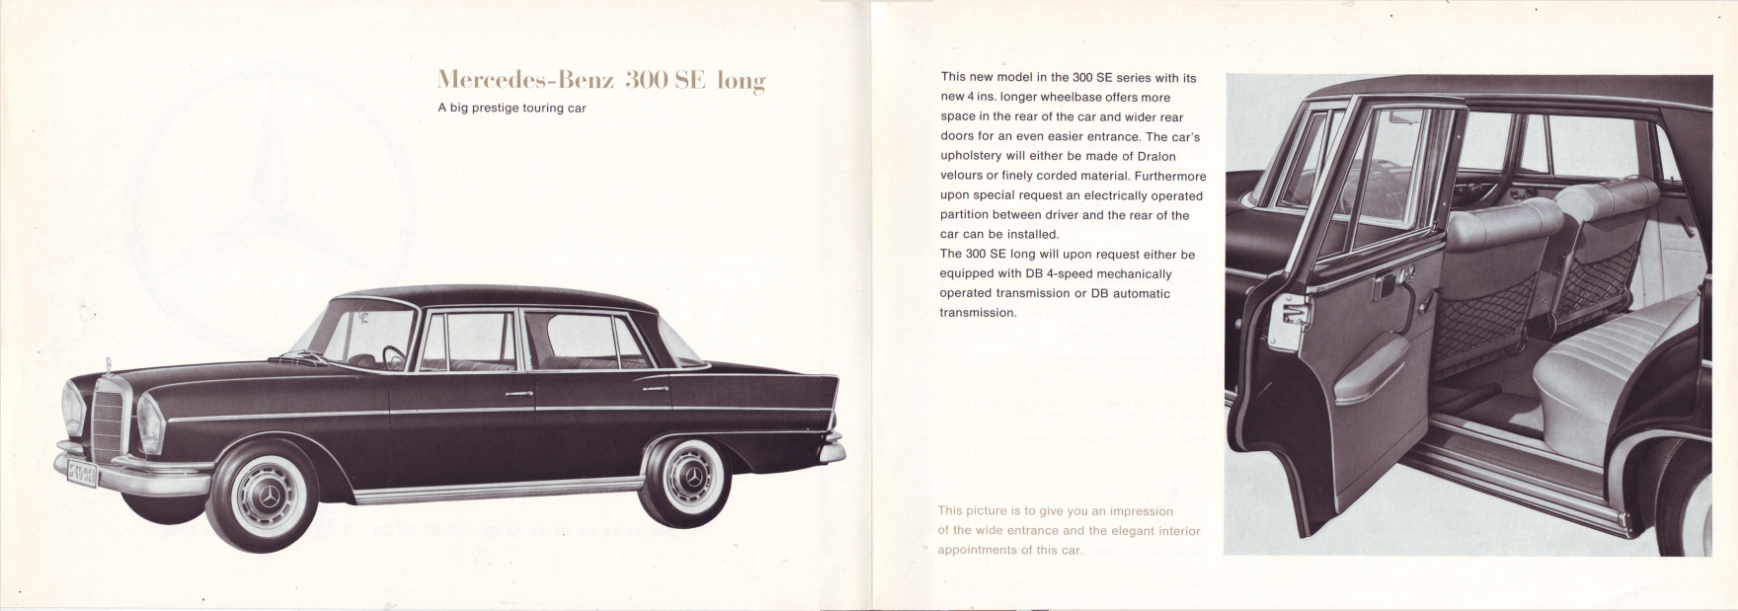 (CATÁLOGO): W112 - 300SE longa - 1963 002